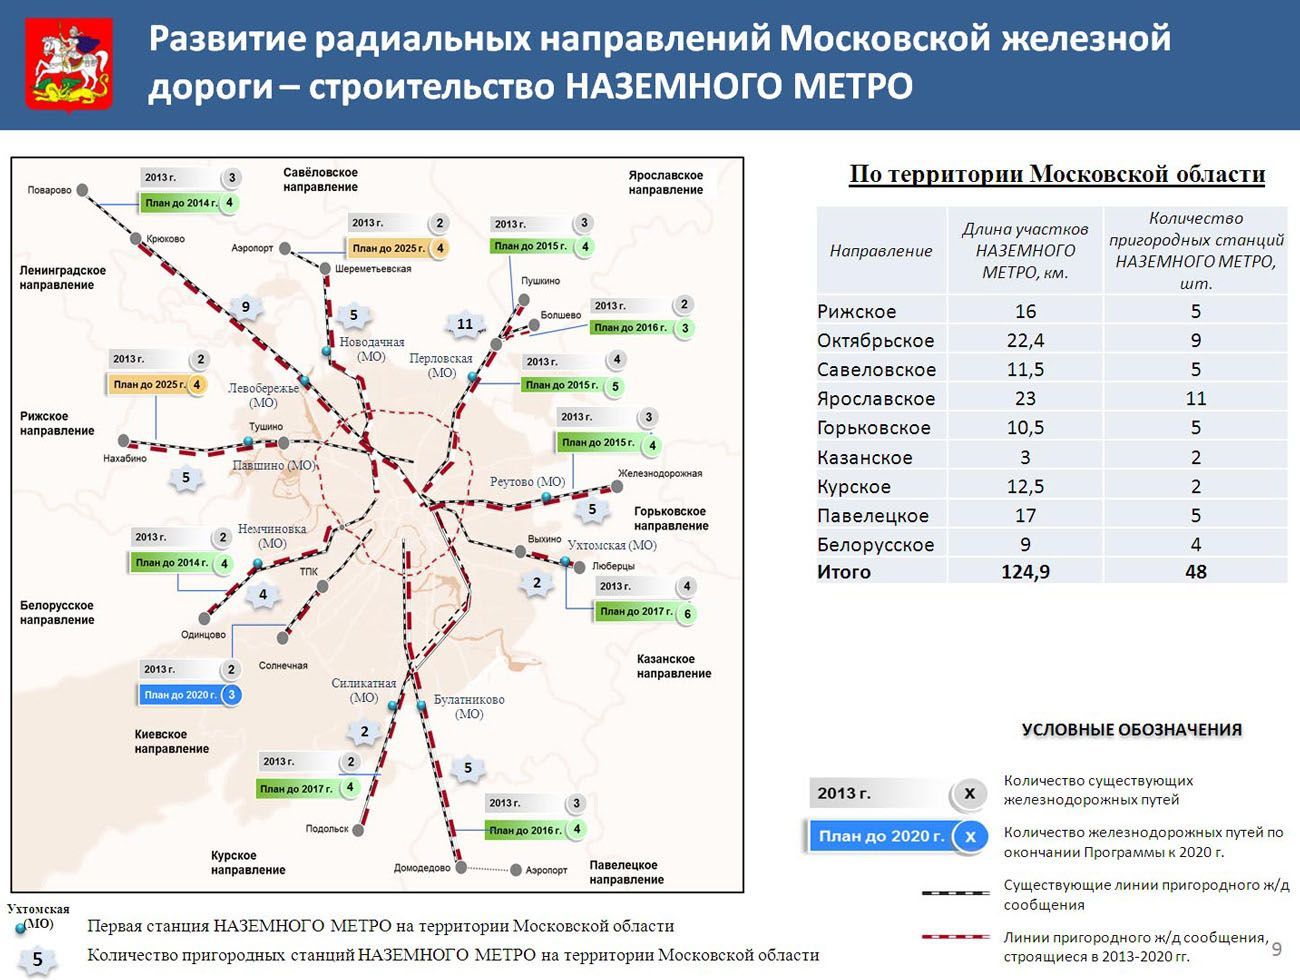 Легке метро в Одинцово: схема